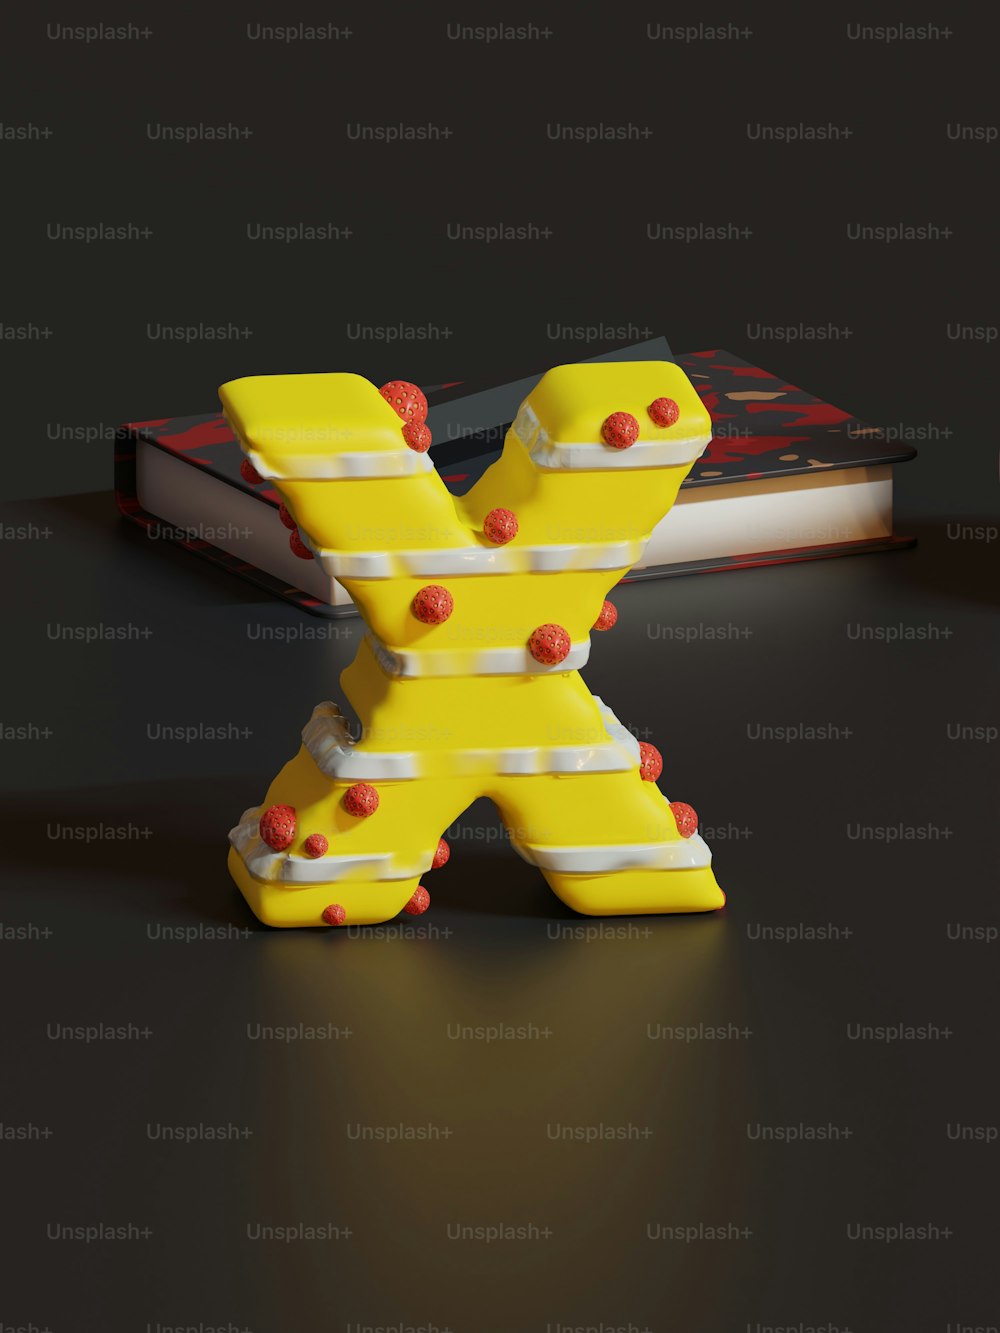 テーブルの上に置かれた黄色いX字型の物体